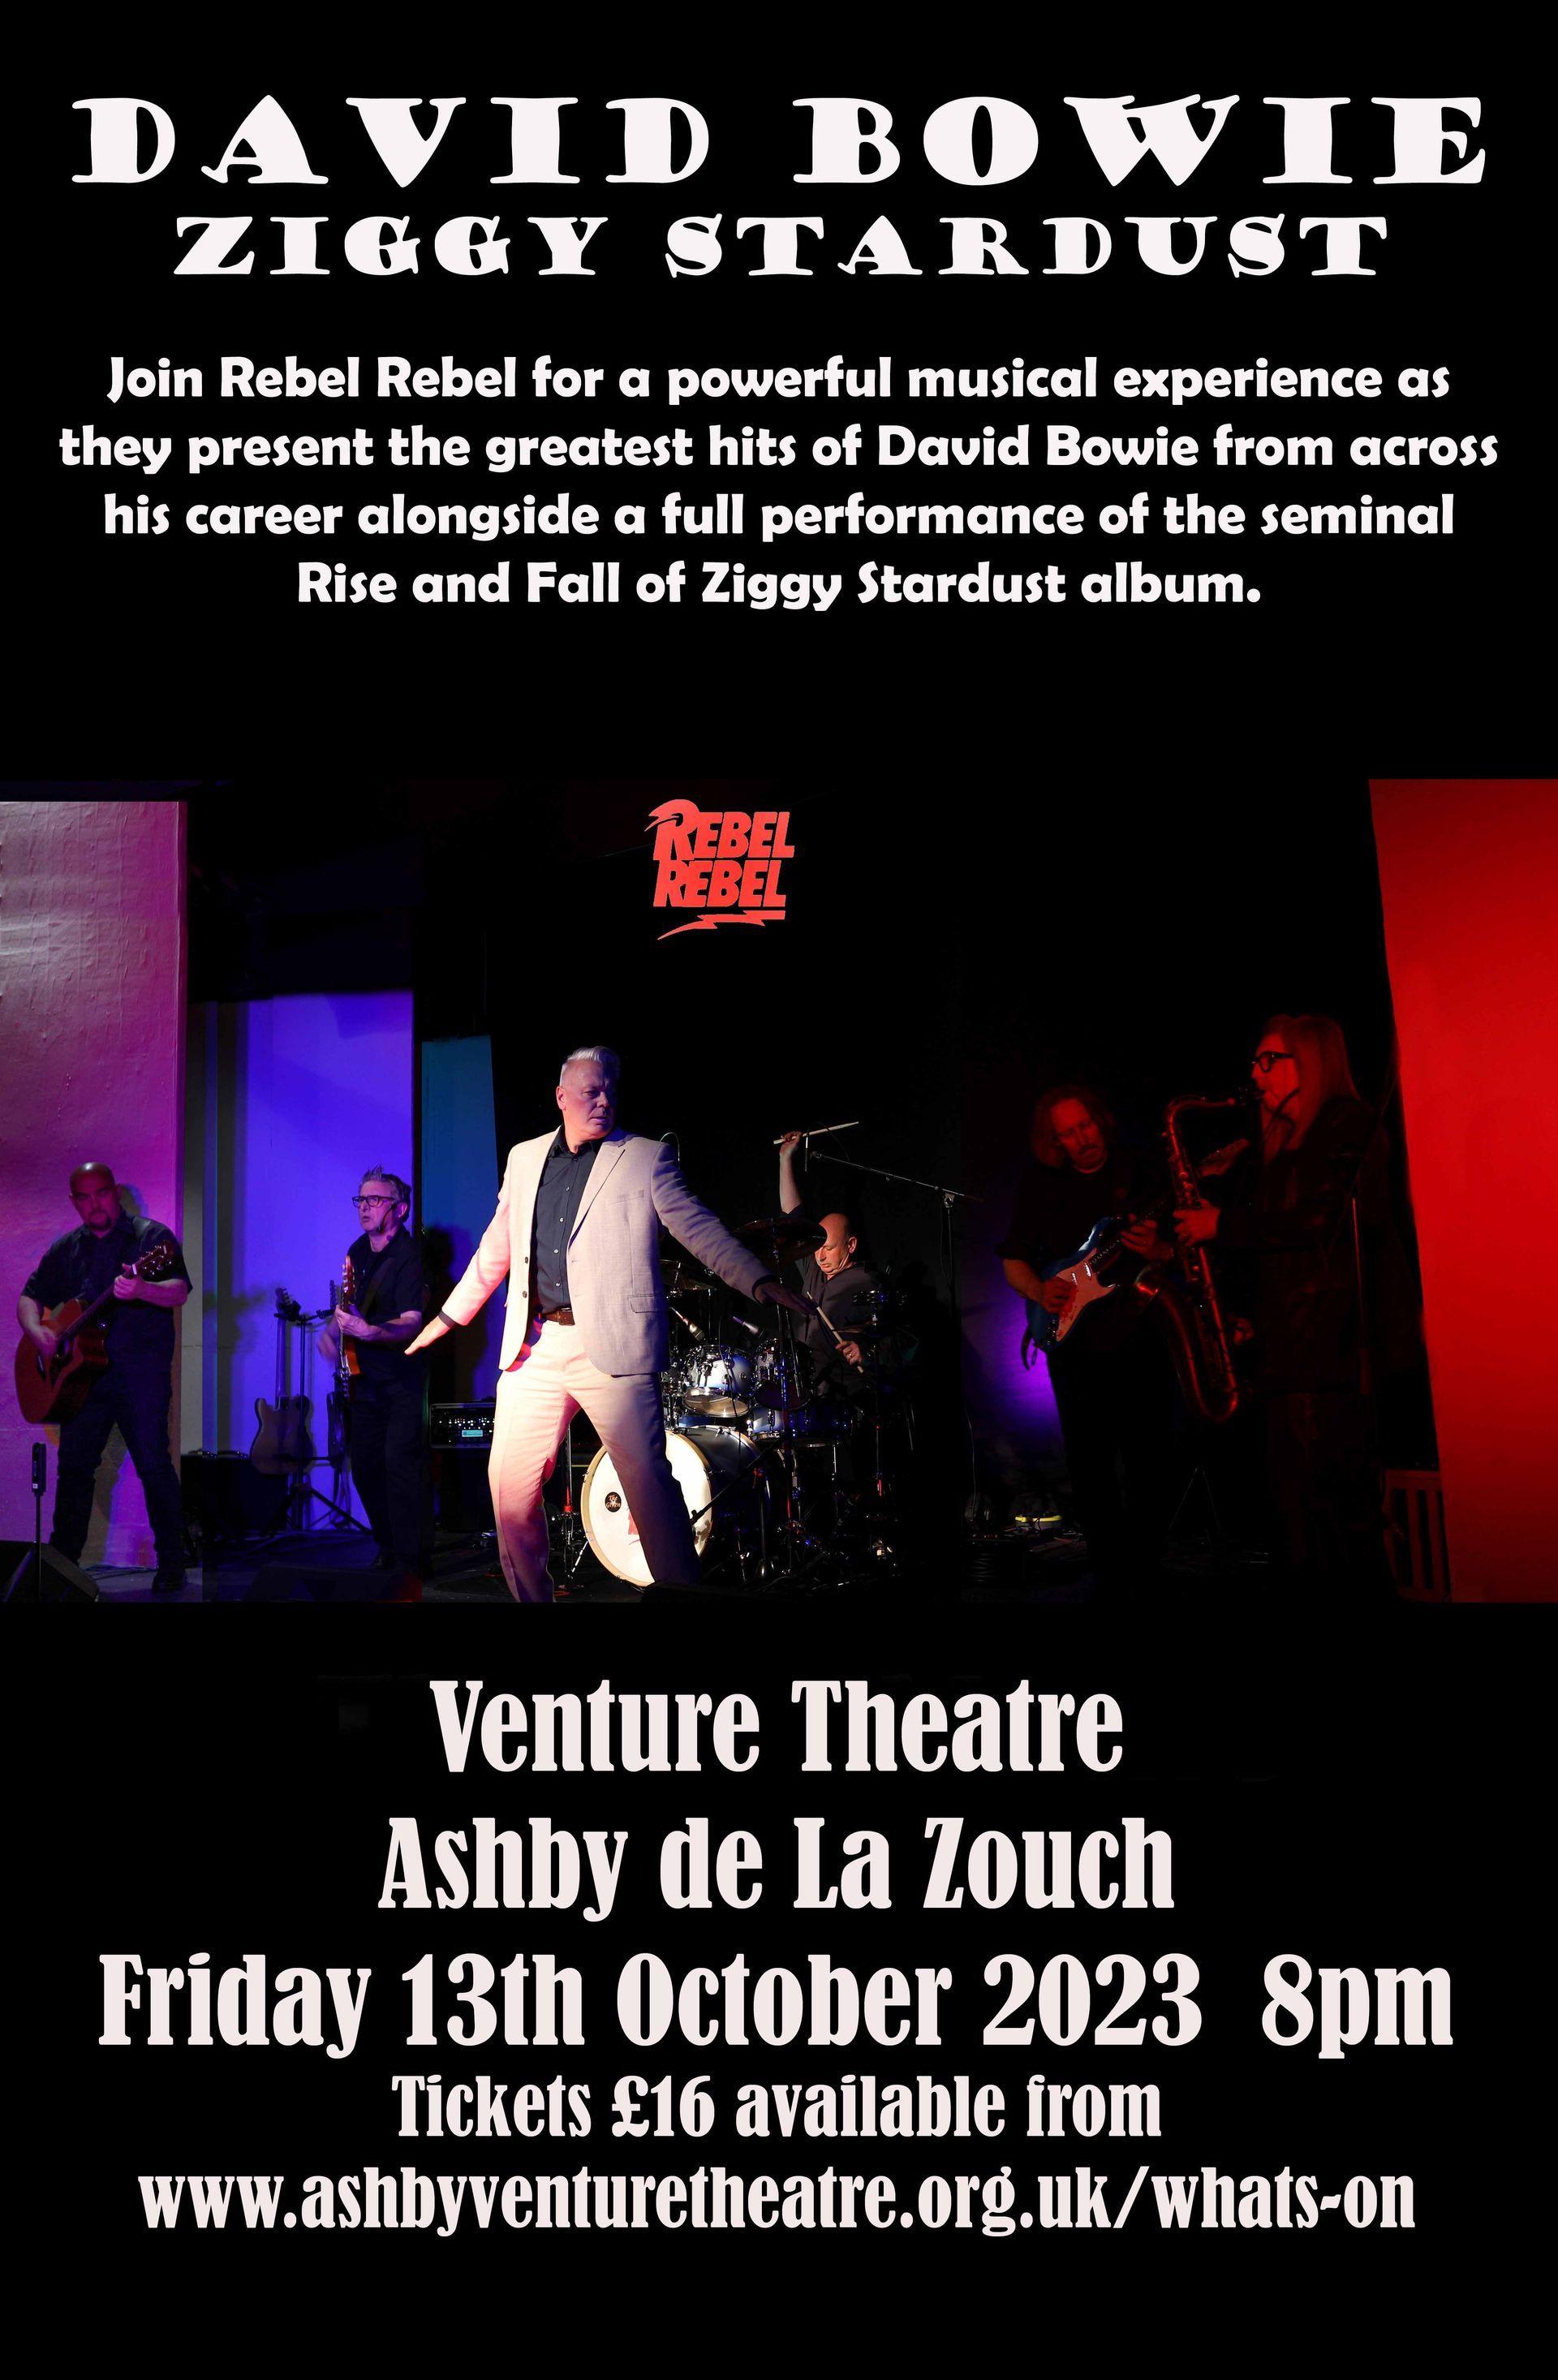 The Venture Theatre, North Street, Ashby-de-la-Zouch